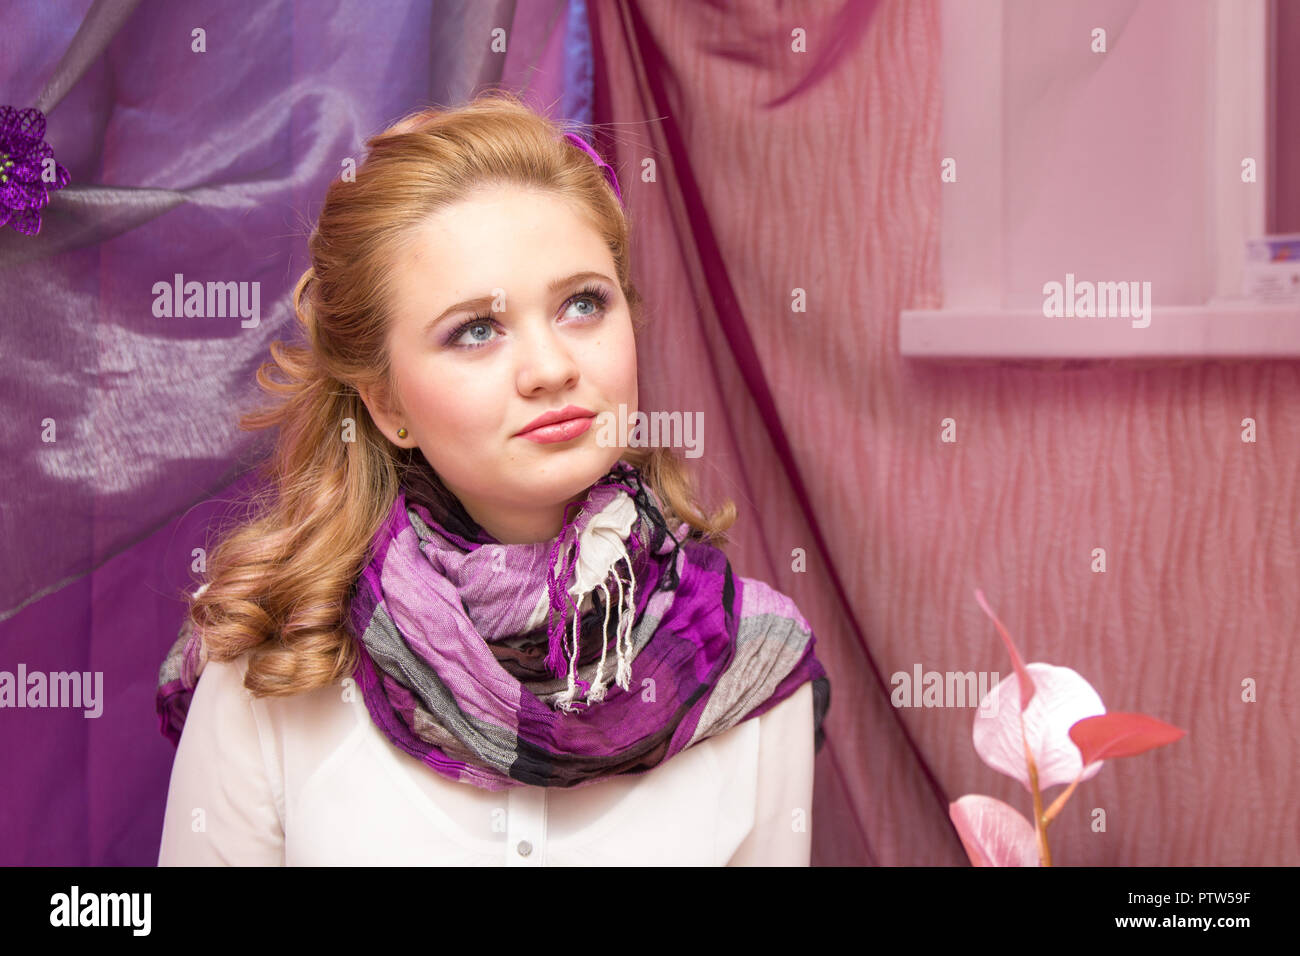 Une jeune fille blonde dans un foulard mauve à l'appareil photo Banque D'Images